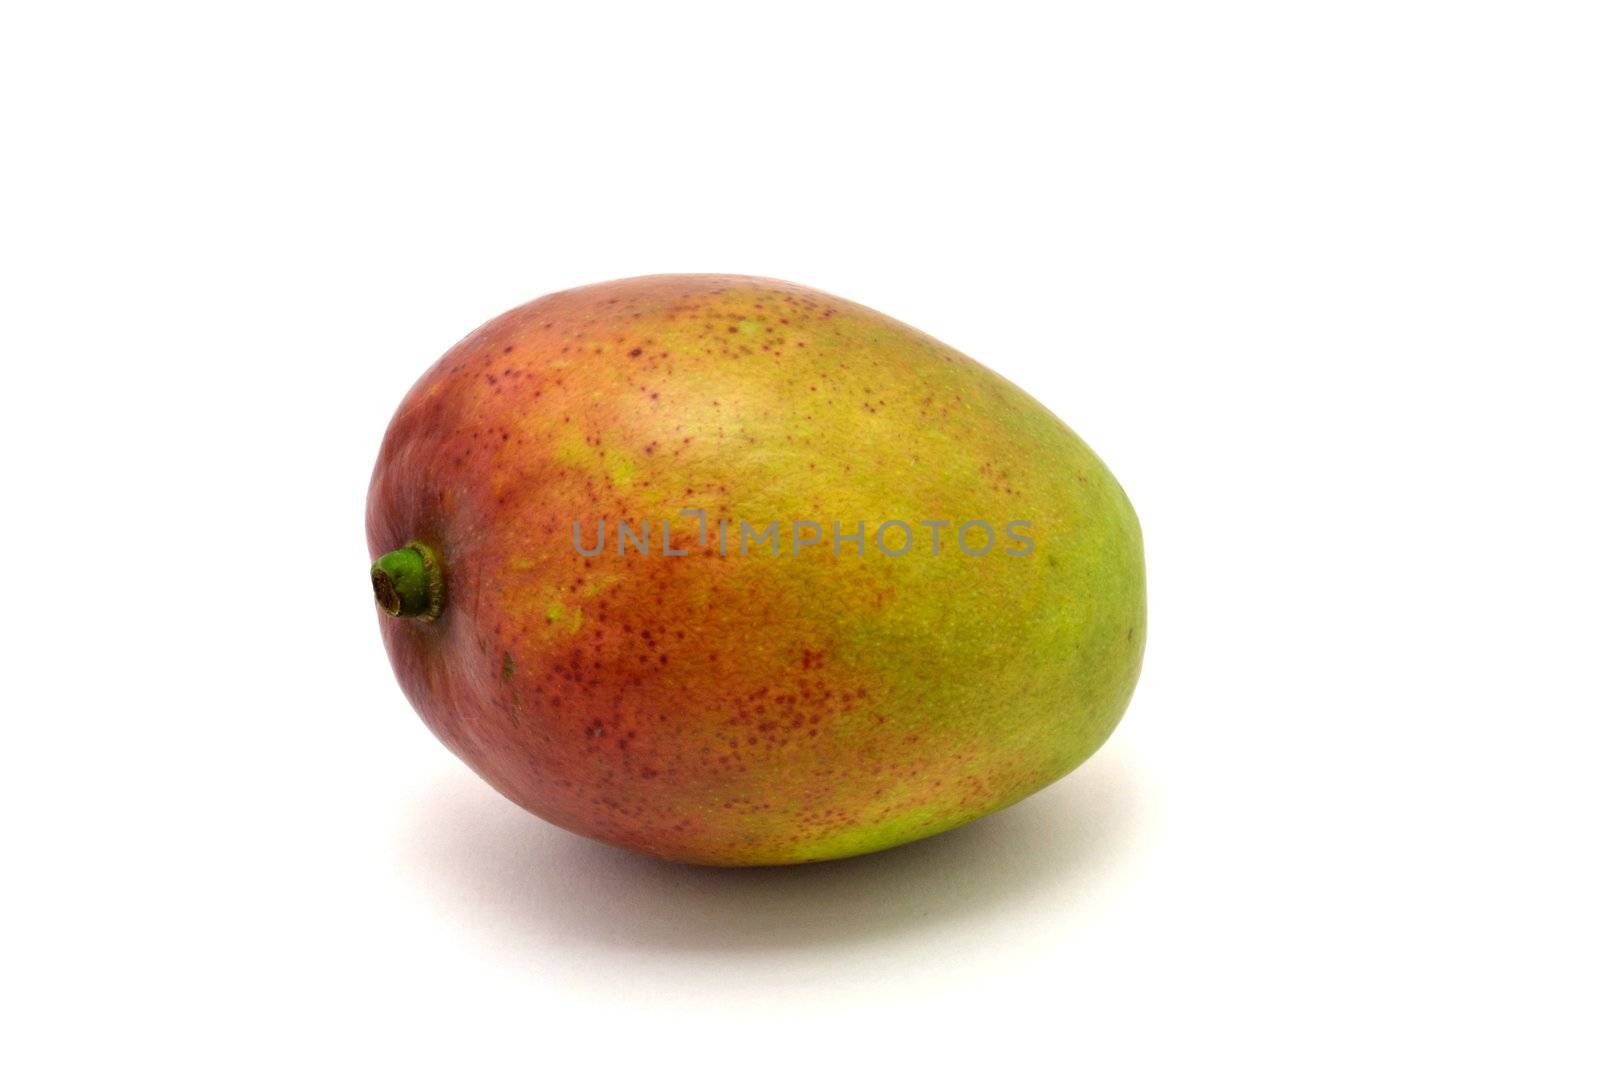 The fresh mango by Autre